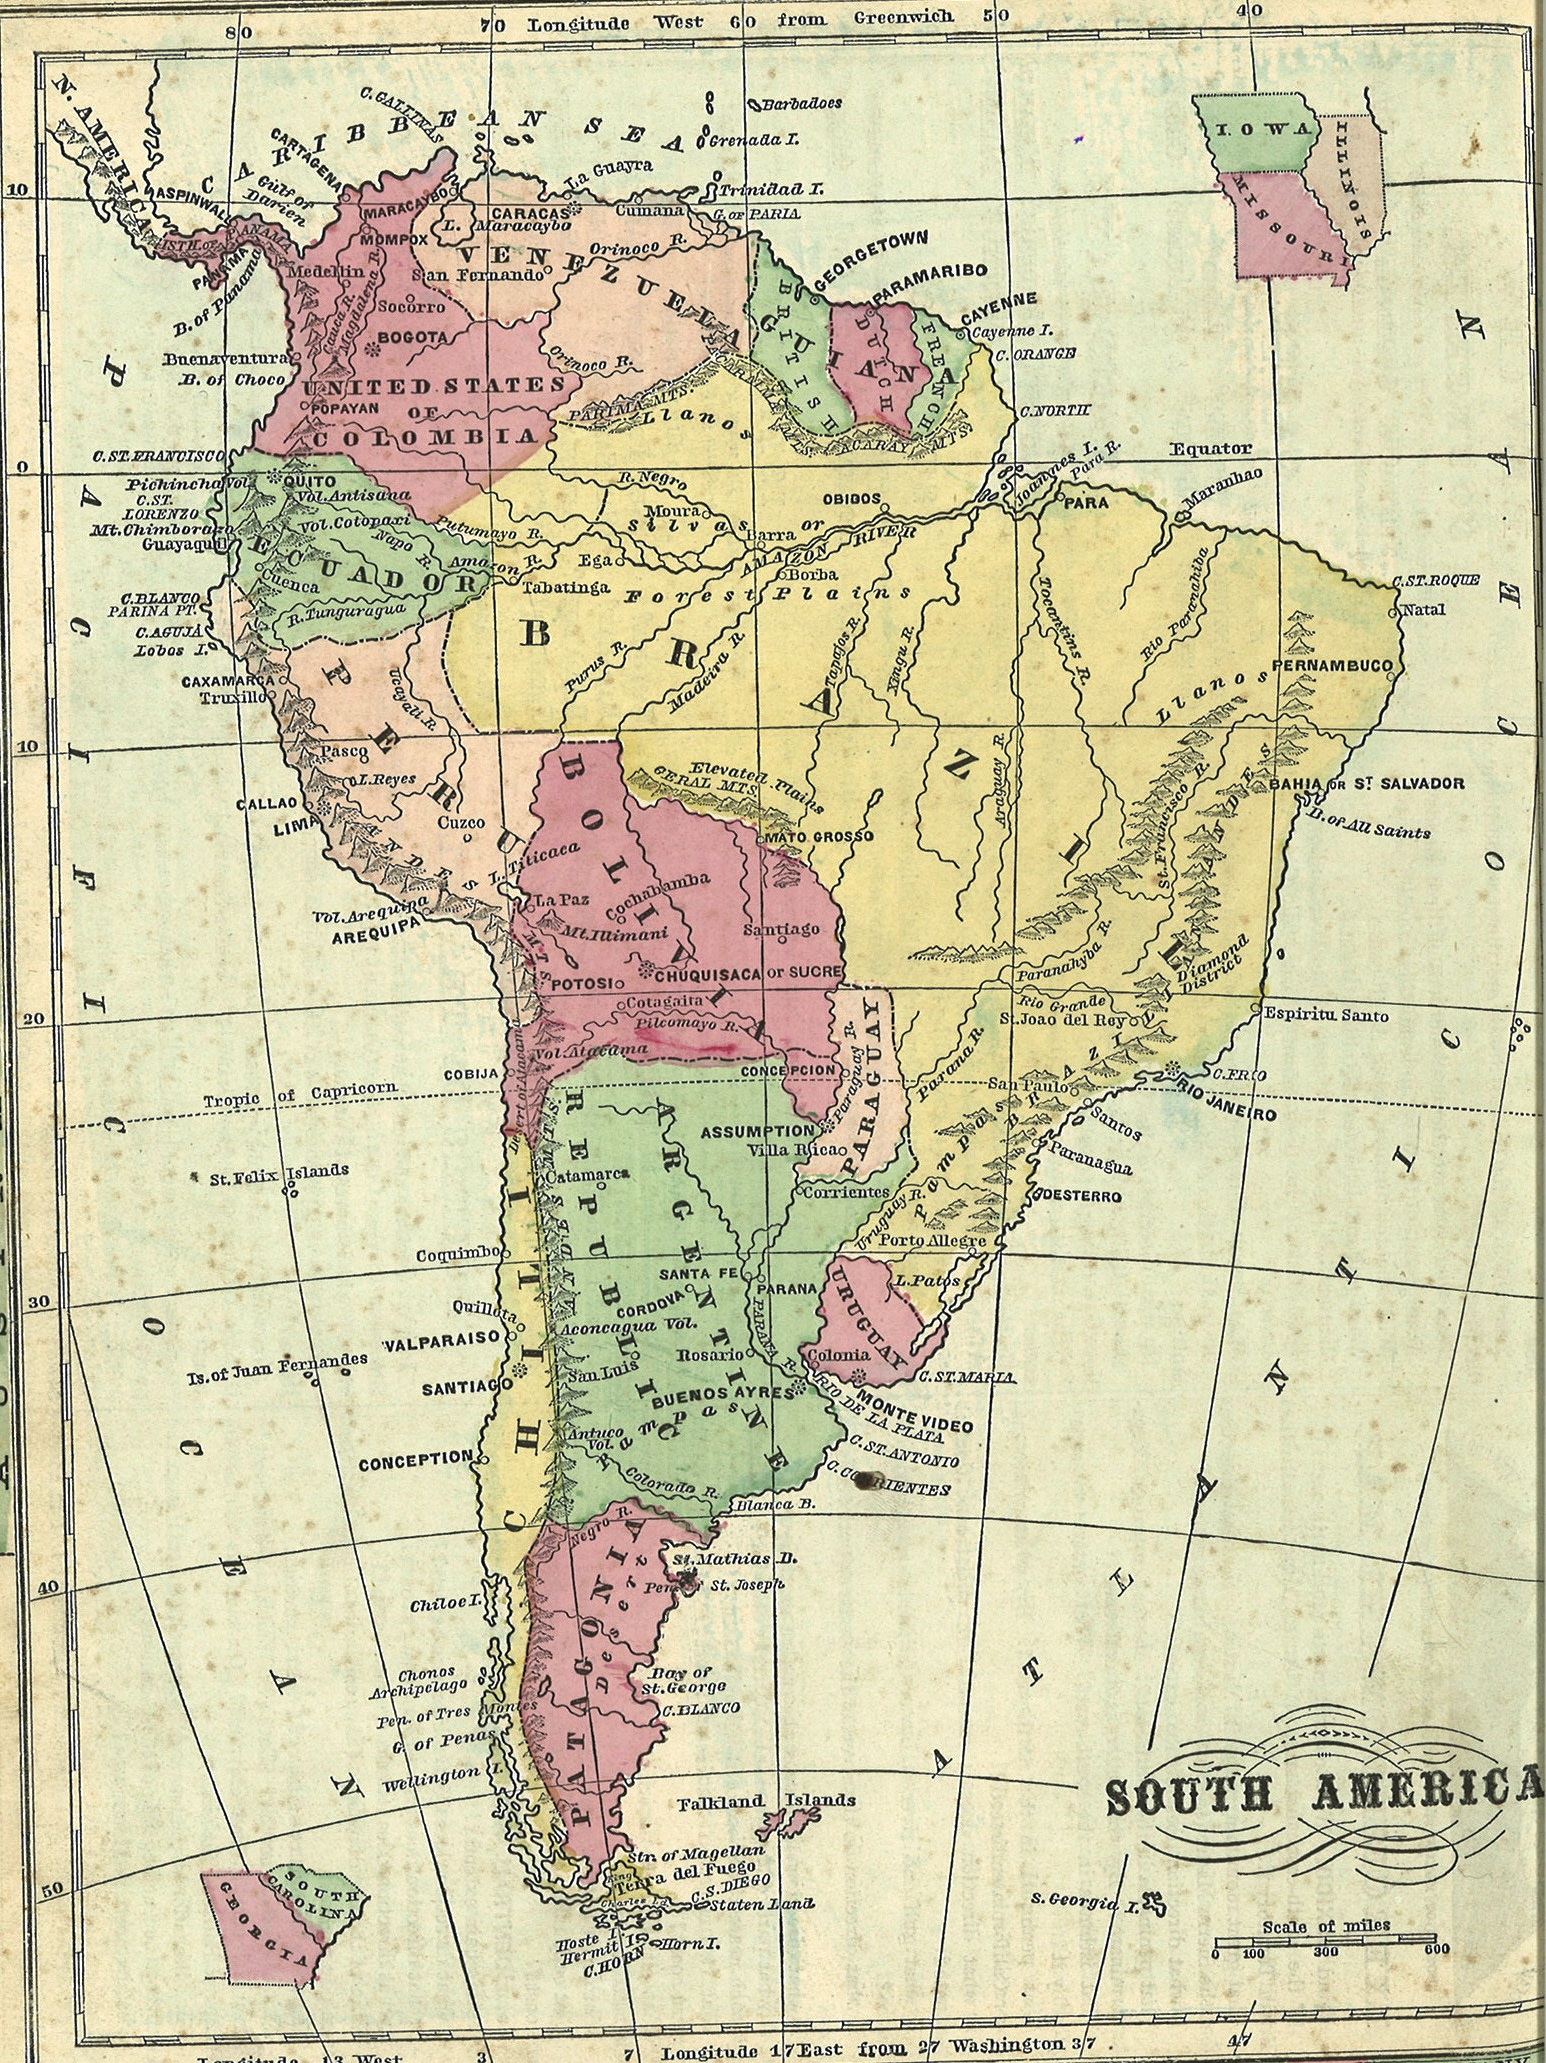 Eastern South America